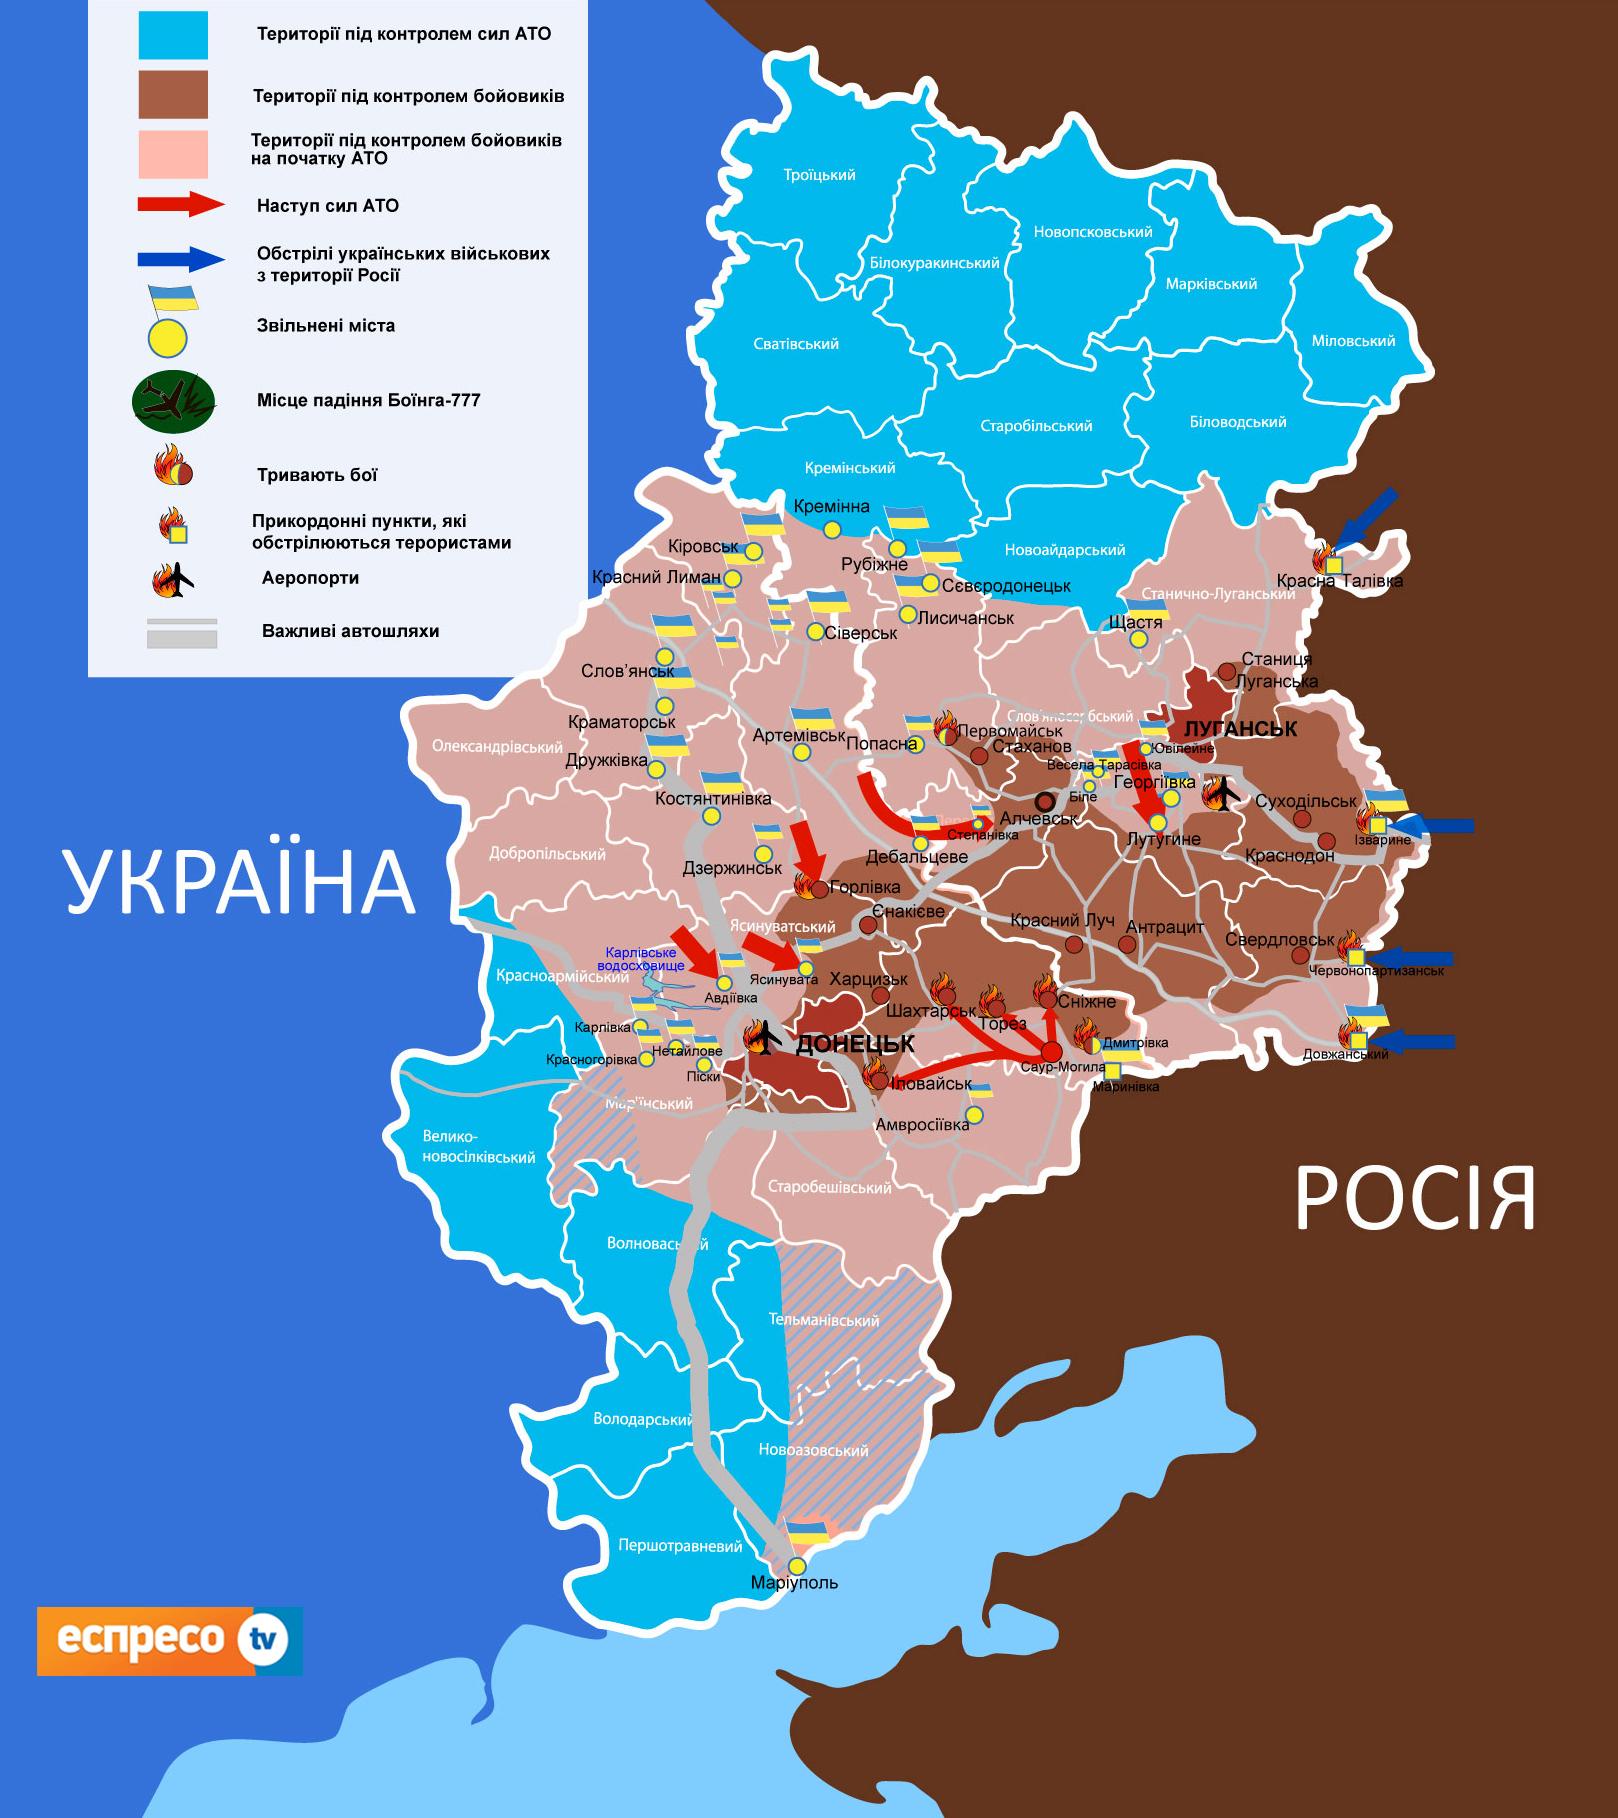 http://espreso.tv/uploads/article/49578/images/im-Lugansk_Donetsk_MAPA_04_08_17.jpg